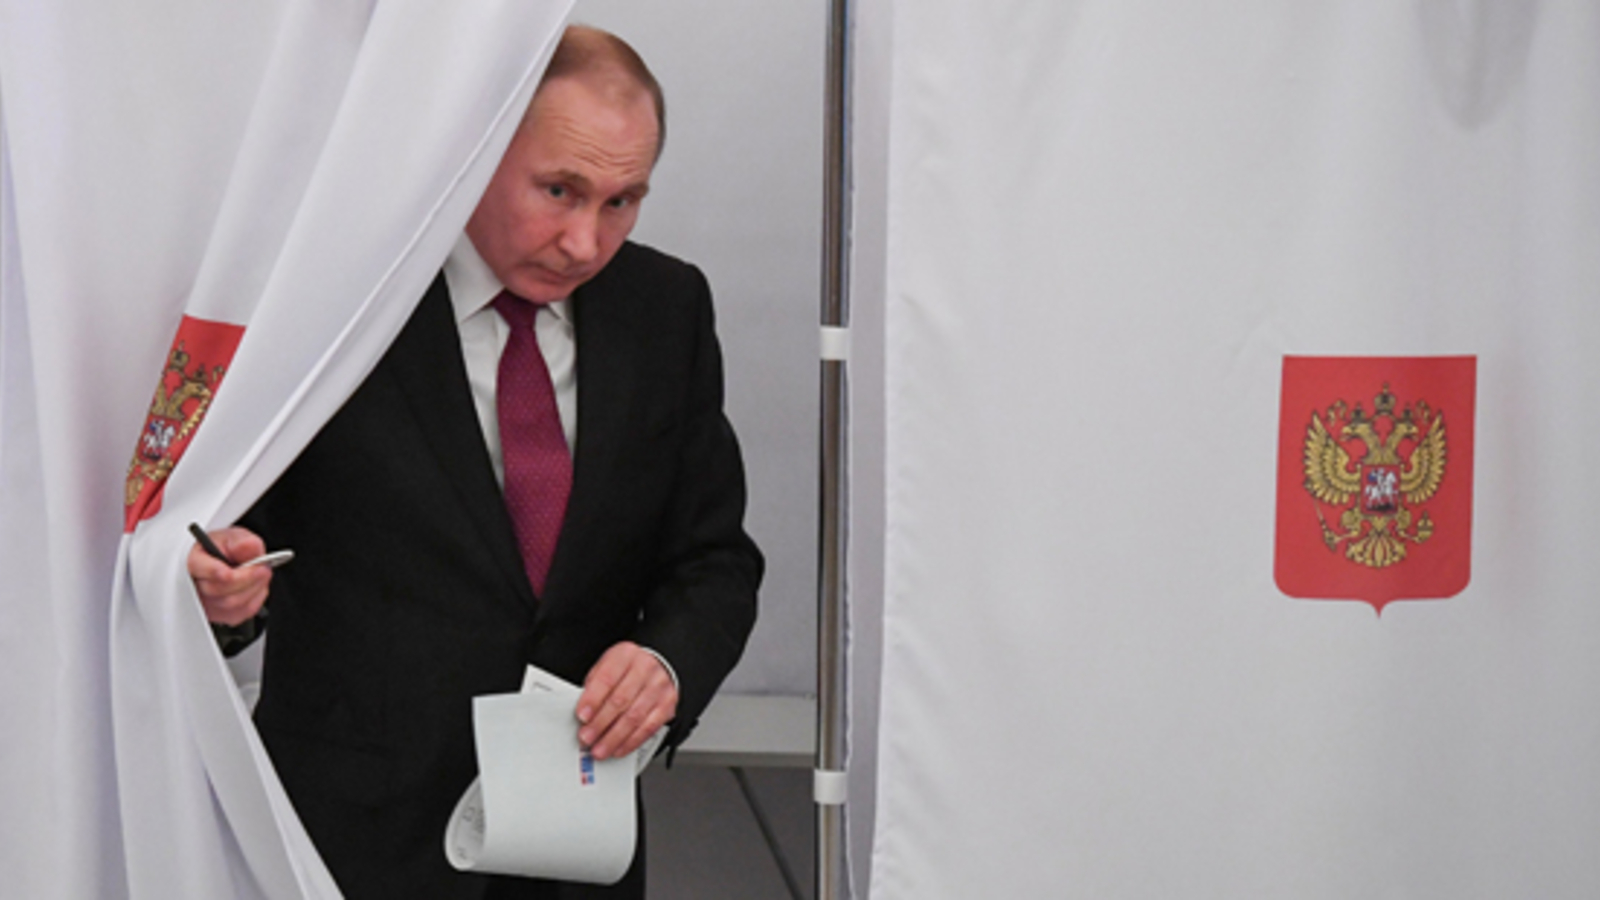 RusslandWahl Putin vor 4. Amtszeit oe24.at